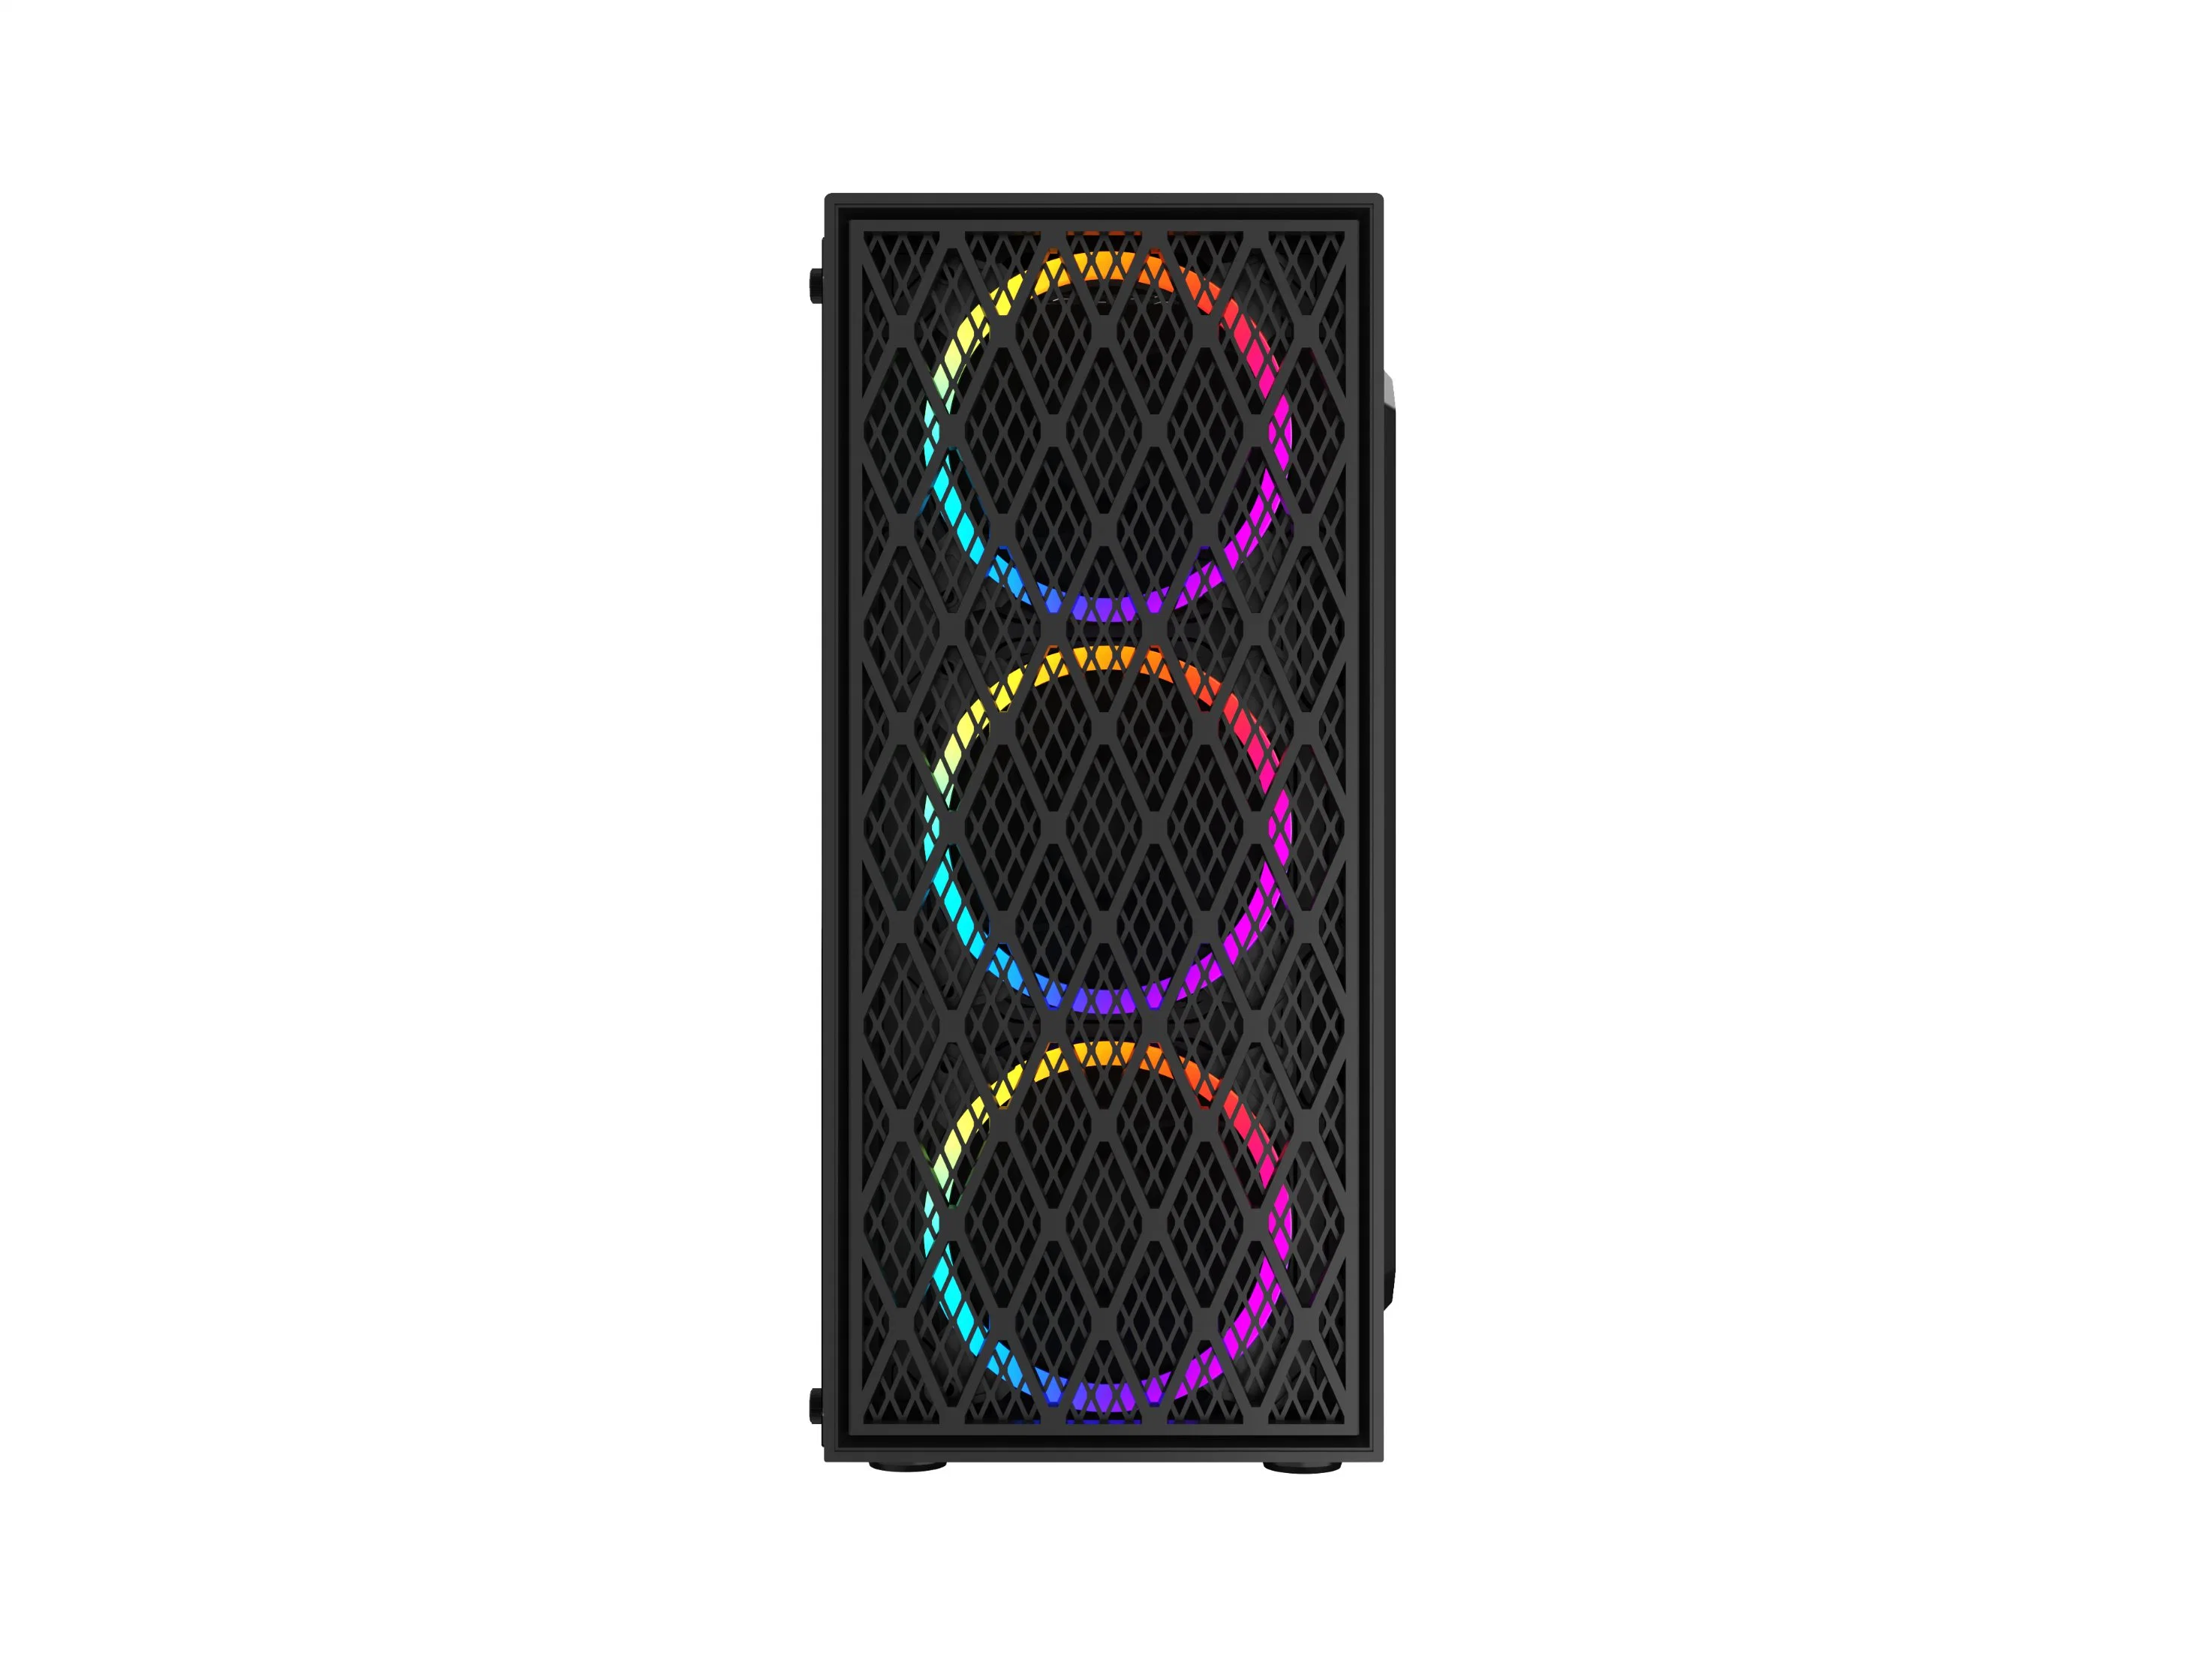 Caliente de la moda equipo de torre ATX de PC Gabinete con ventiladores de RGB de 12 cm.